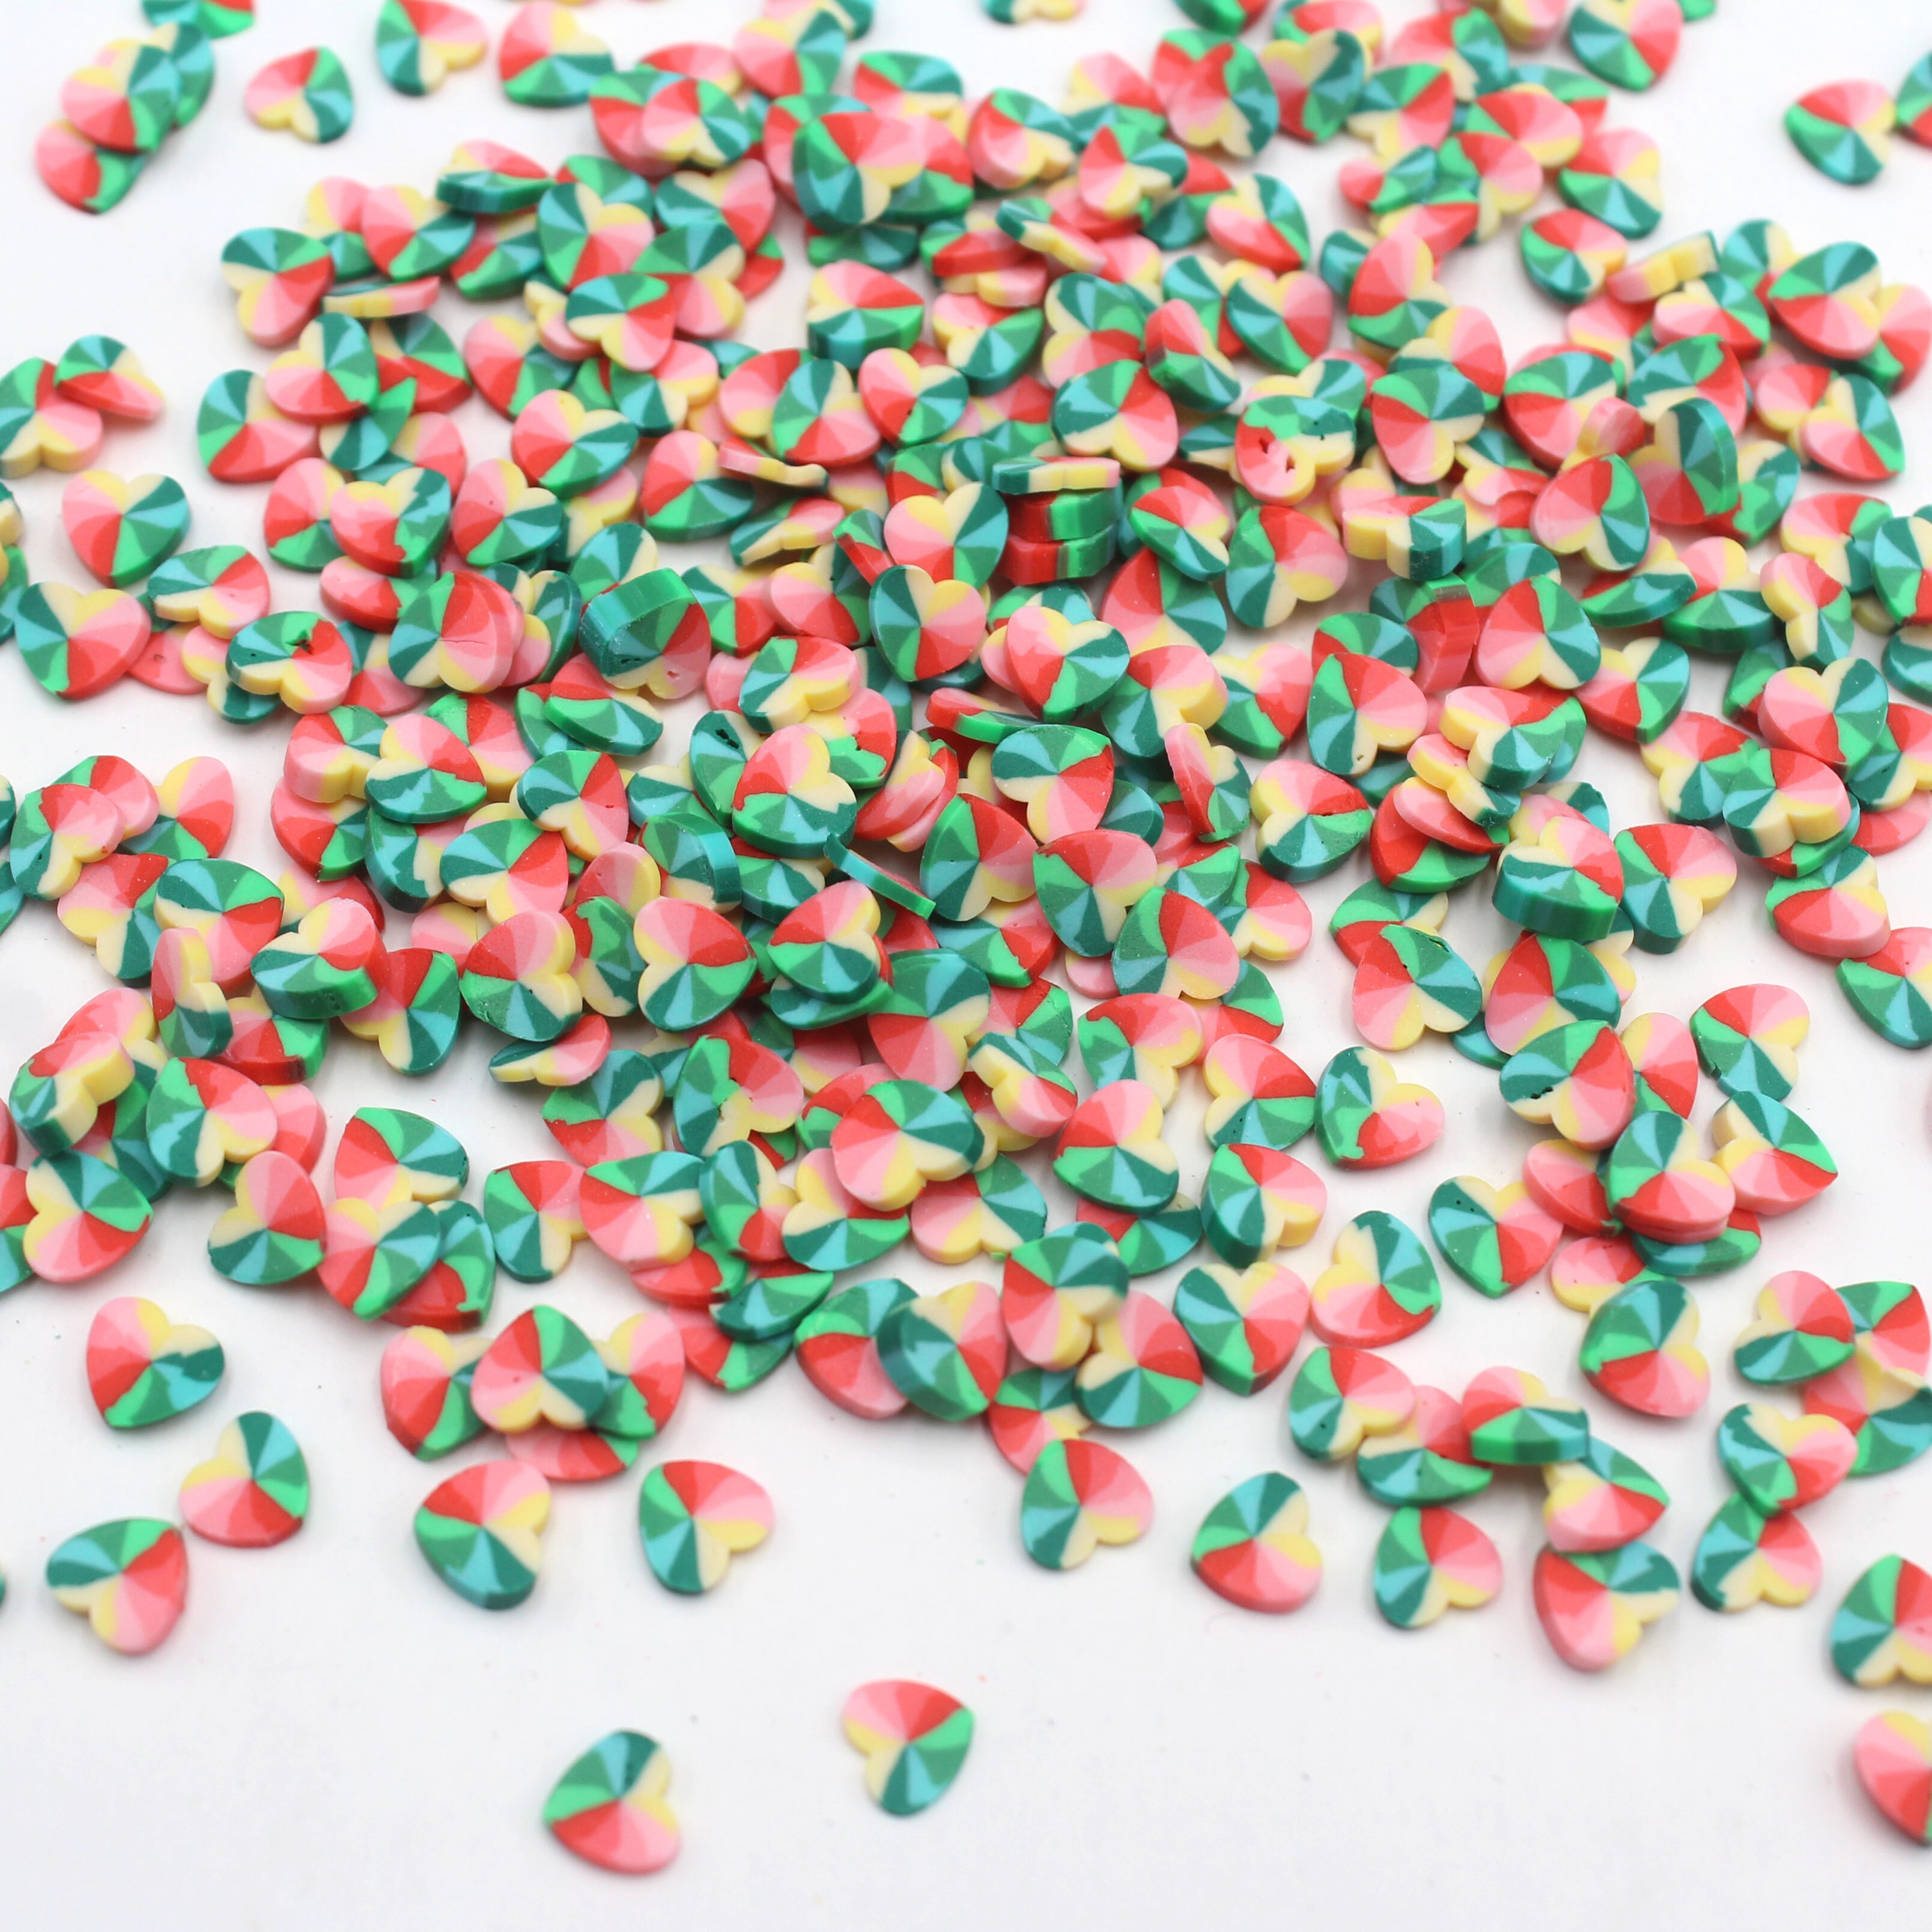 100 G/partij Polymer Clay Kleurrijke Liefde Hart Plakjes Sprinkles Voor Diy Ambachten Vullen Decoratie Accessoires